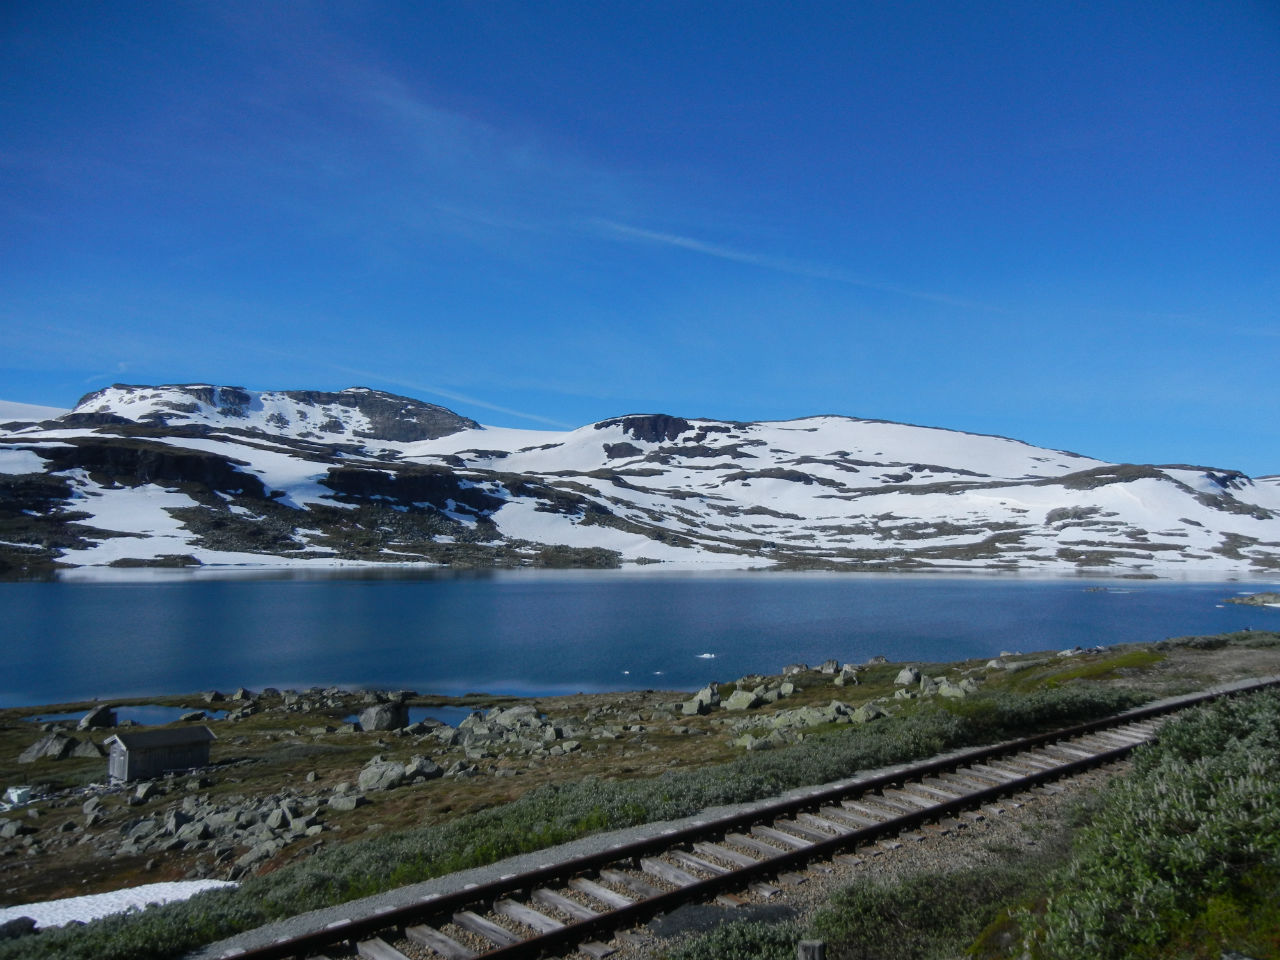 До открытия туннеля, лавины на этом участке пути служили частой причиной прекращения сообщения Осло-Берген на несколько дней. Дорога, кстати, была электрофицированной, но древесина на плато — ценность ценностей — столбы разобрали в первую очередь. Финсе, Норвегия